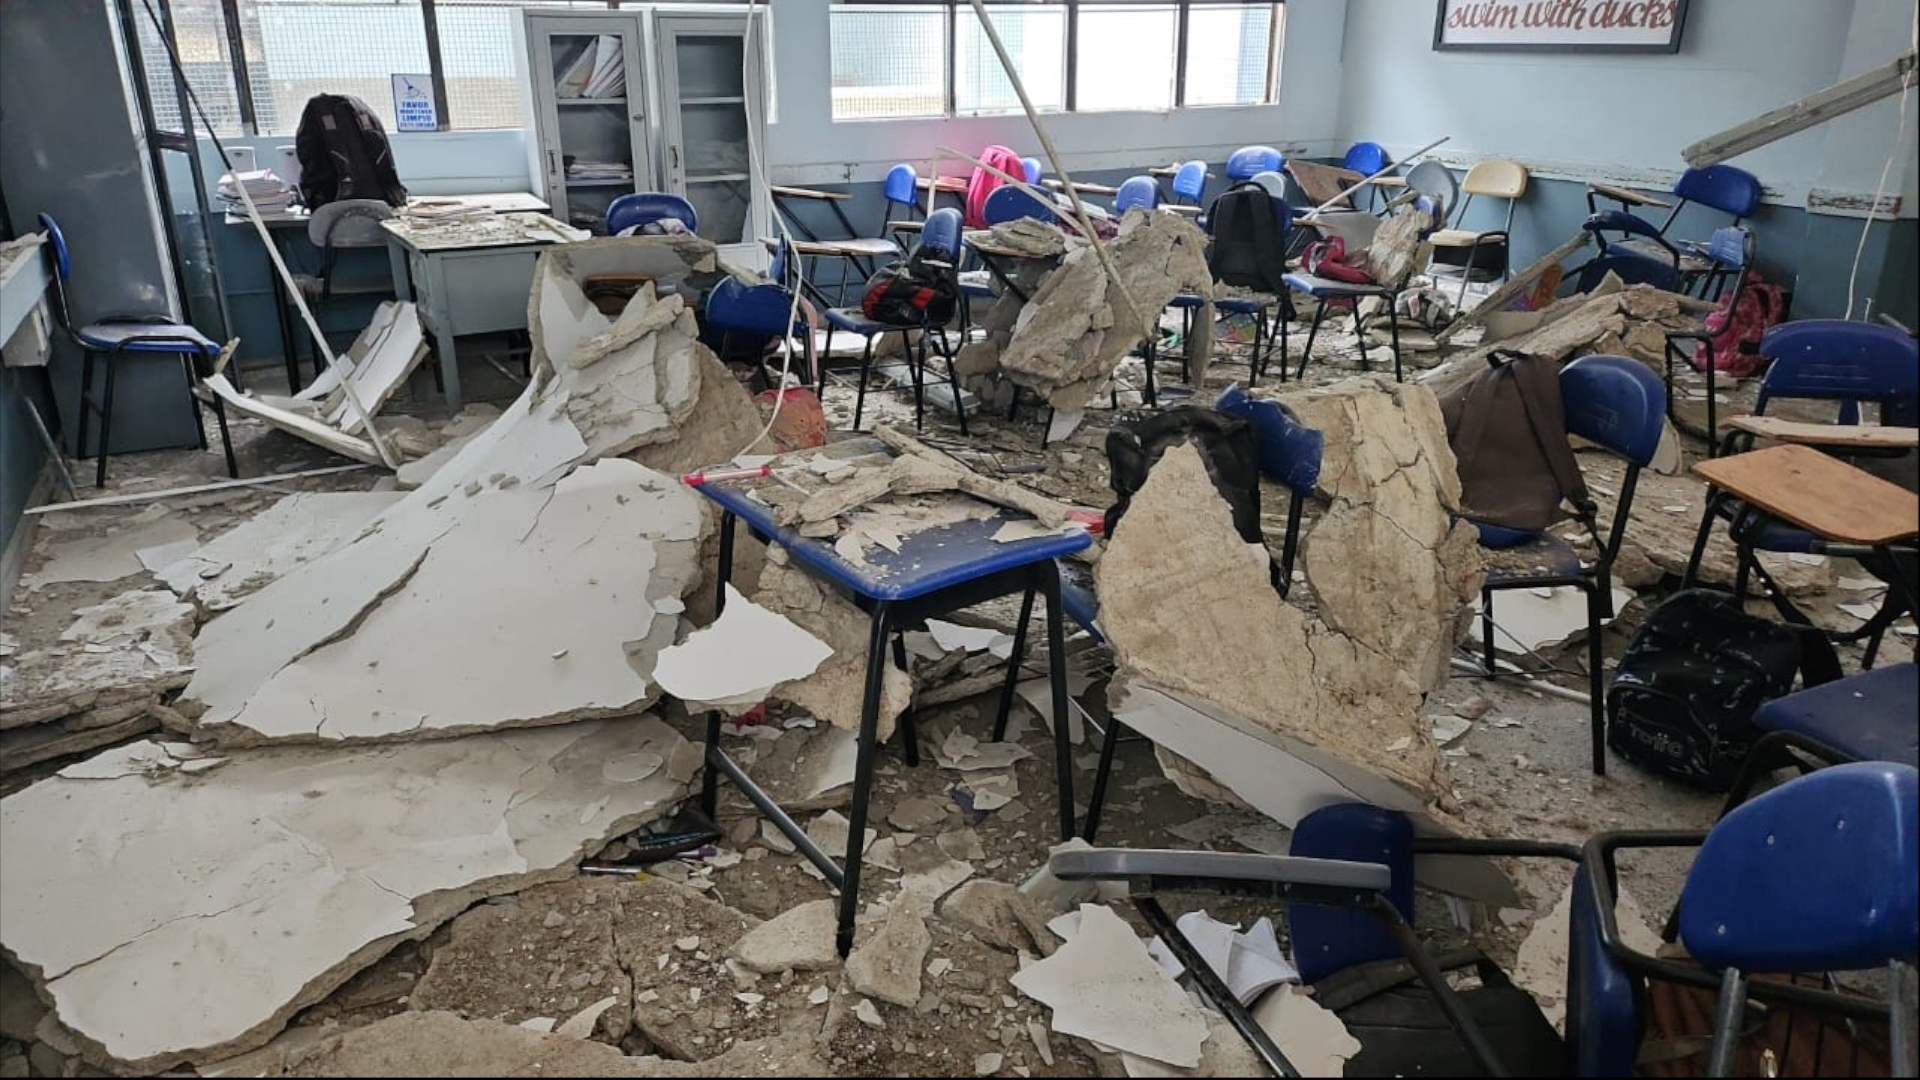 15 estudiantes resultaron heridos tras la caída de un techo en un colegio de Medellín. (Cuenta de Twitter Denuncias Antioquia)